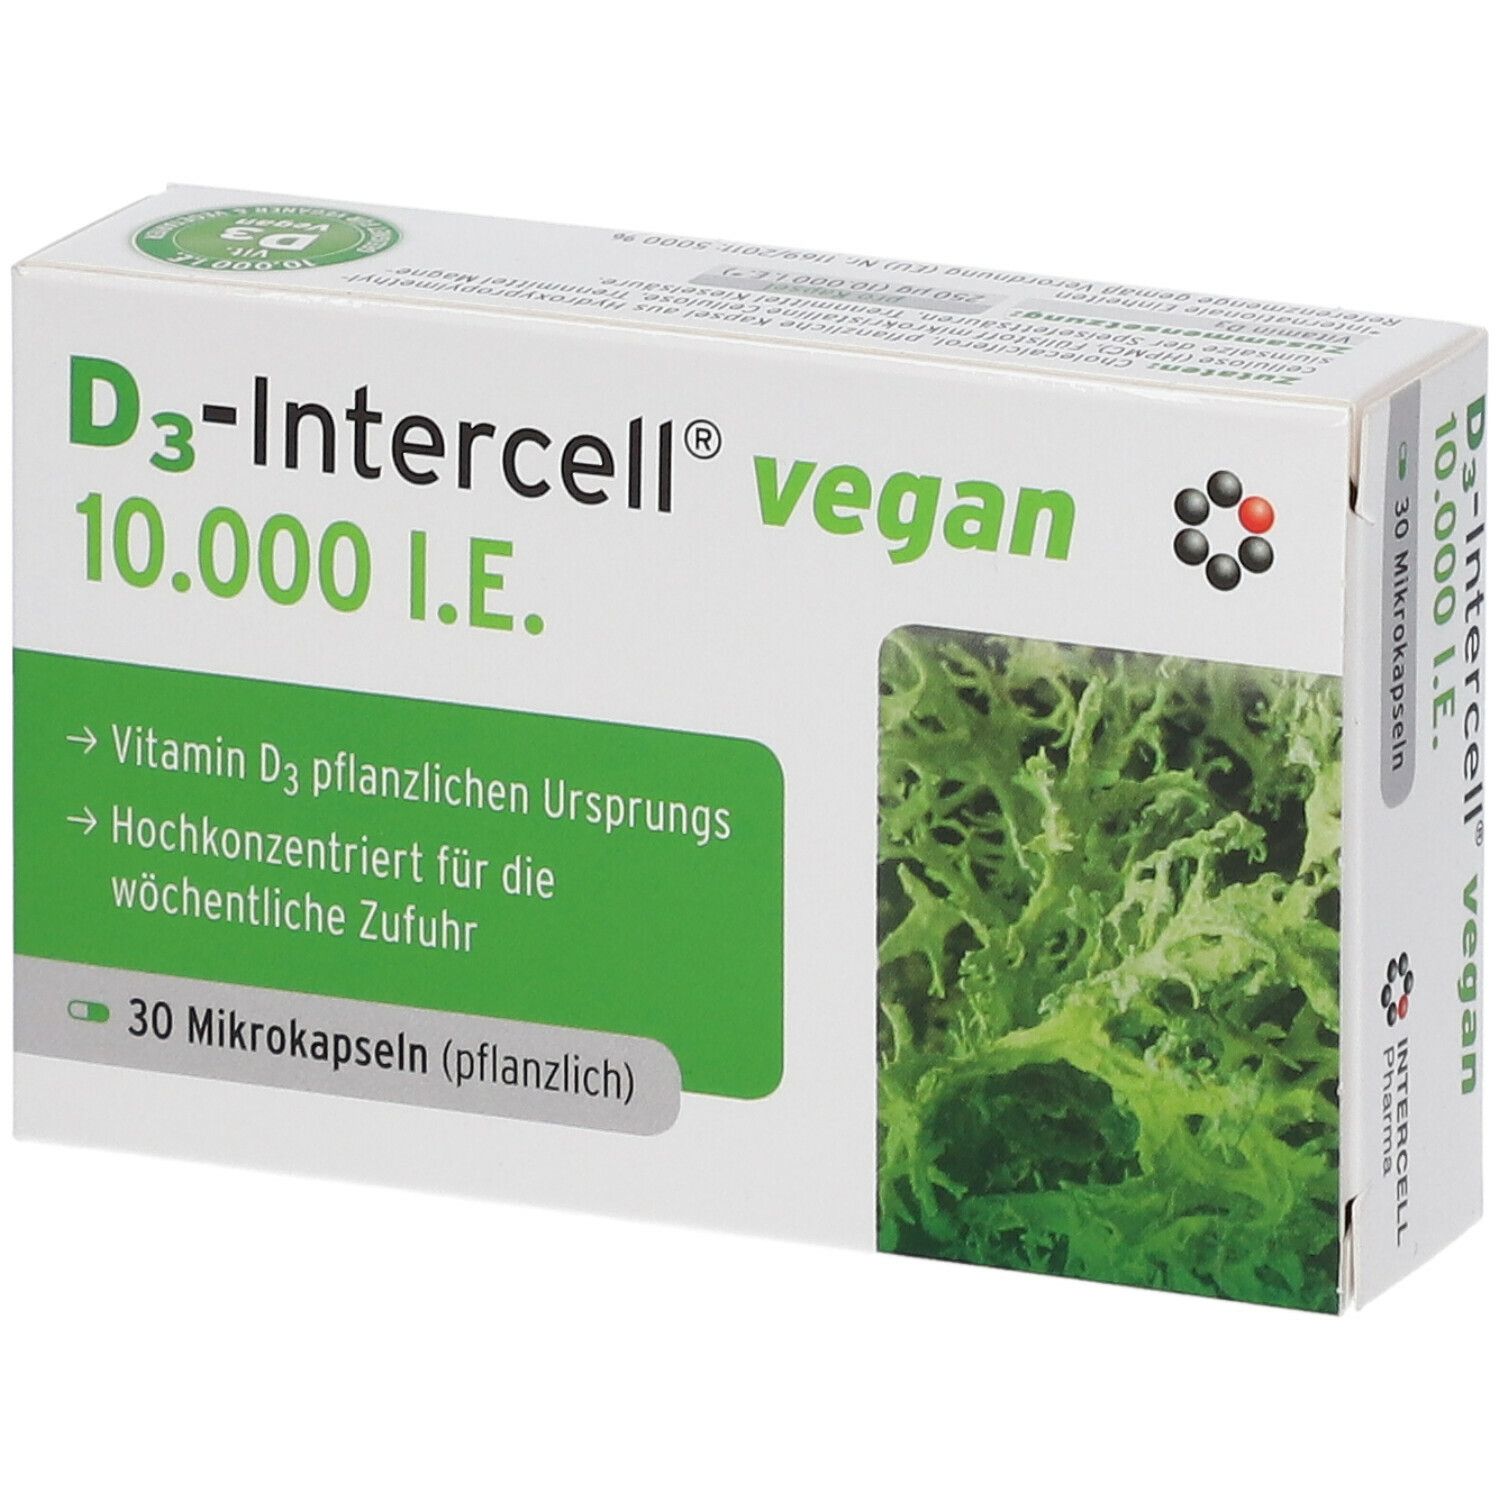 D3-Intercell® Vegan 10.000 I.e.